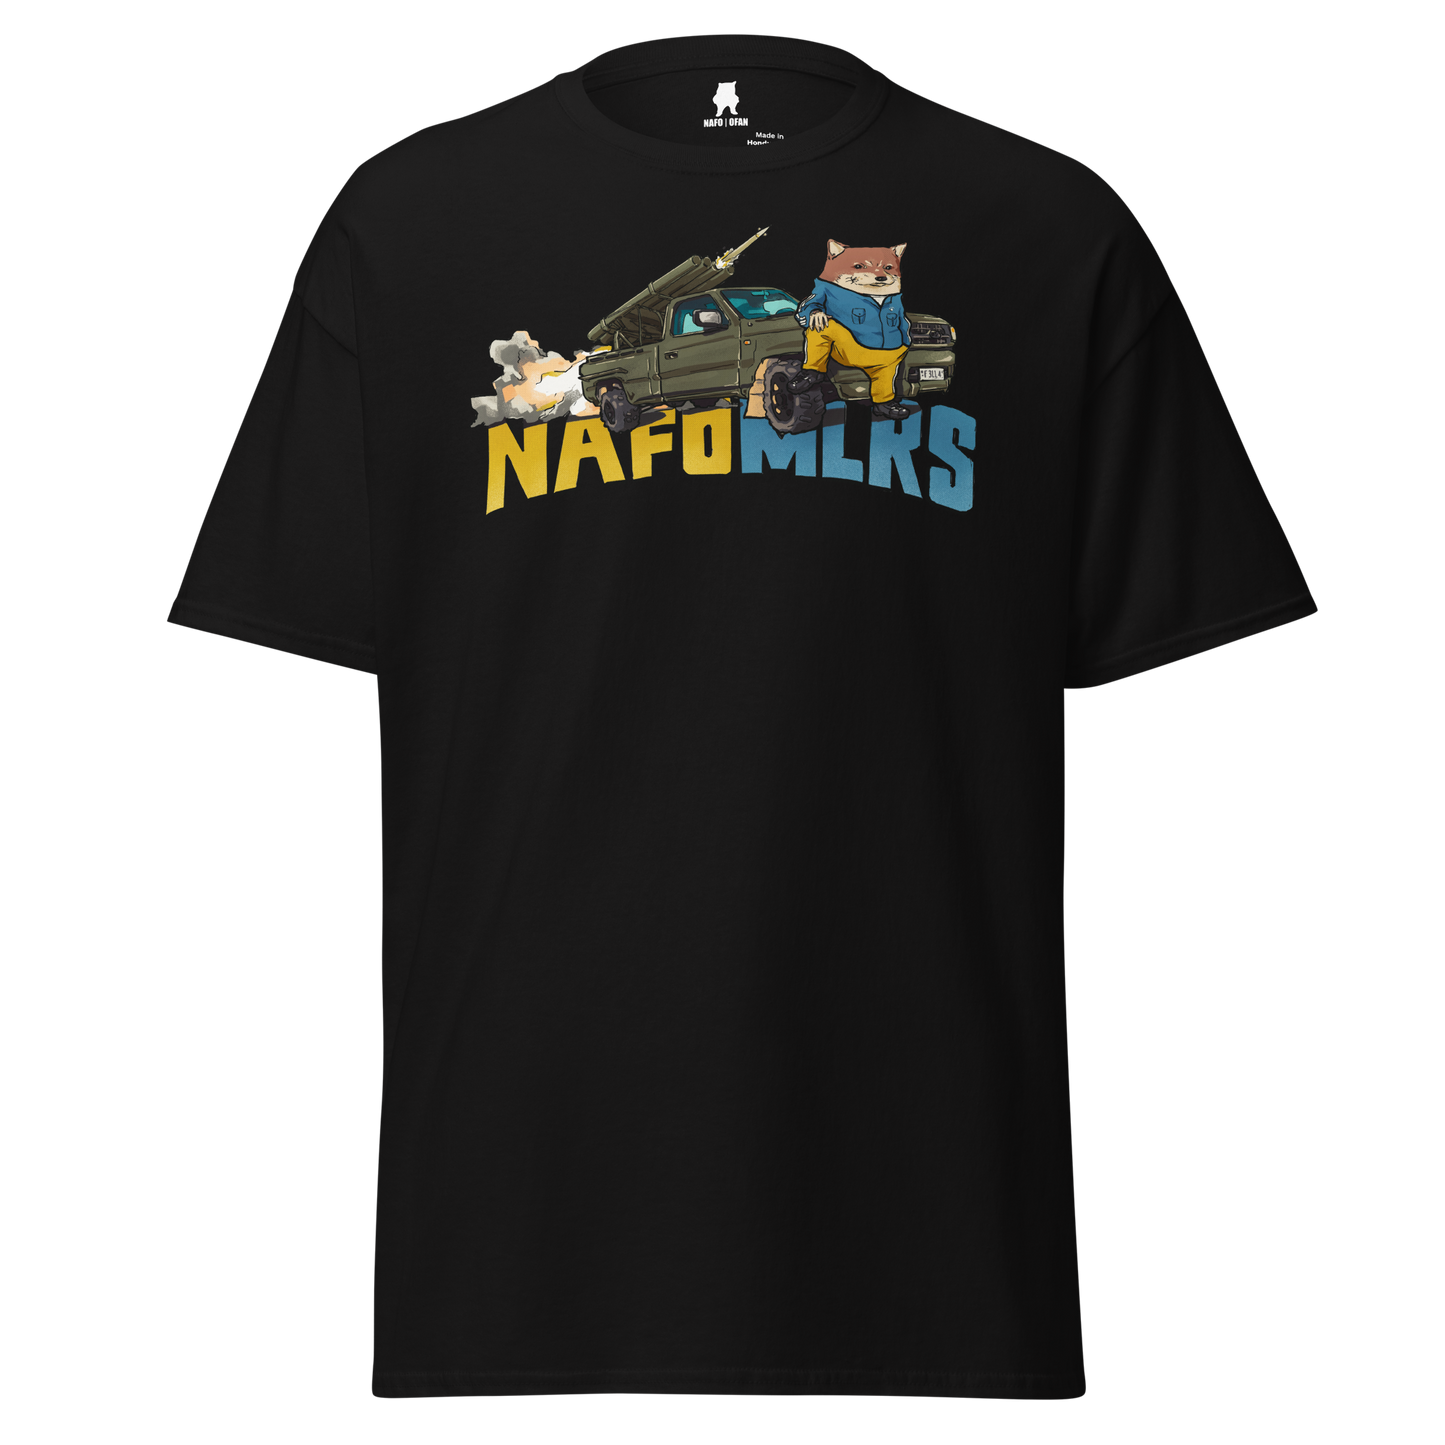 NAFO MLRS T-Shirt